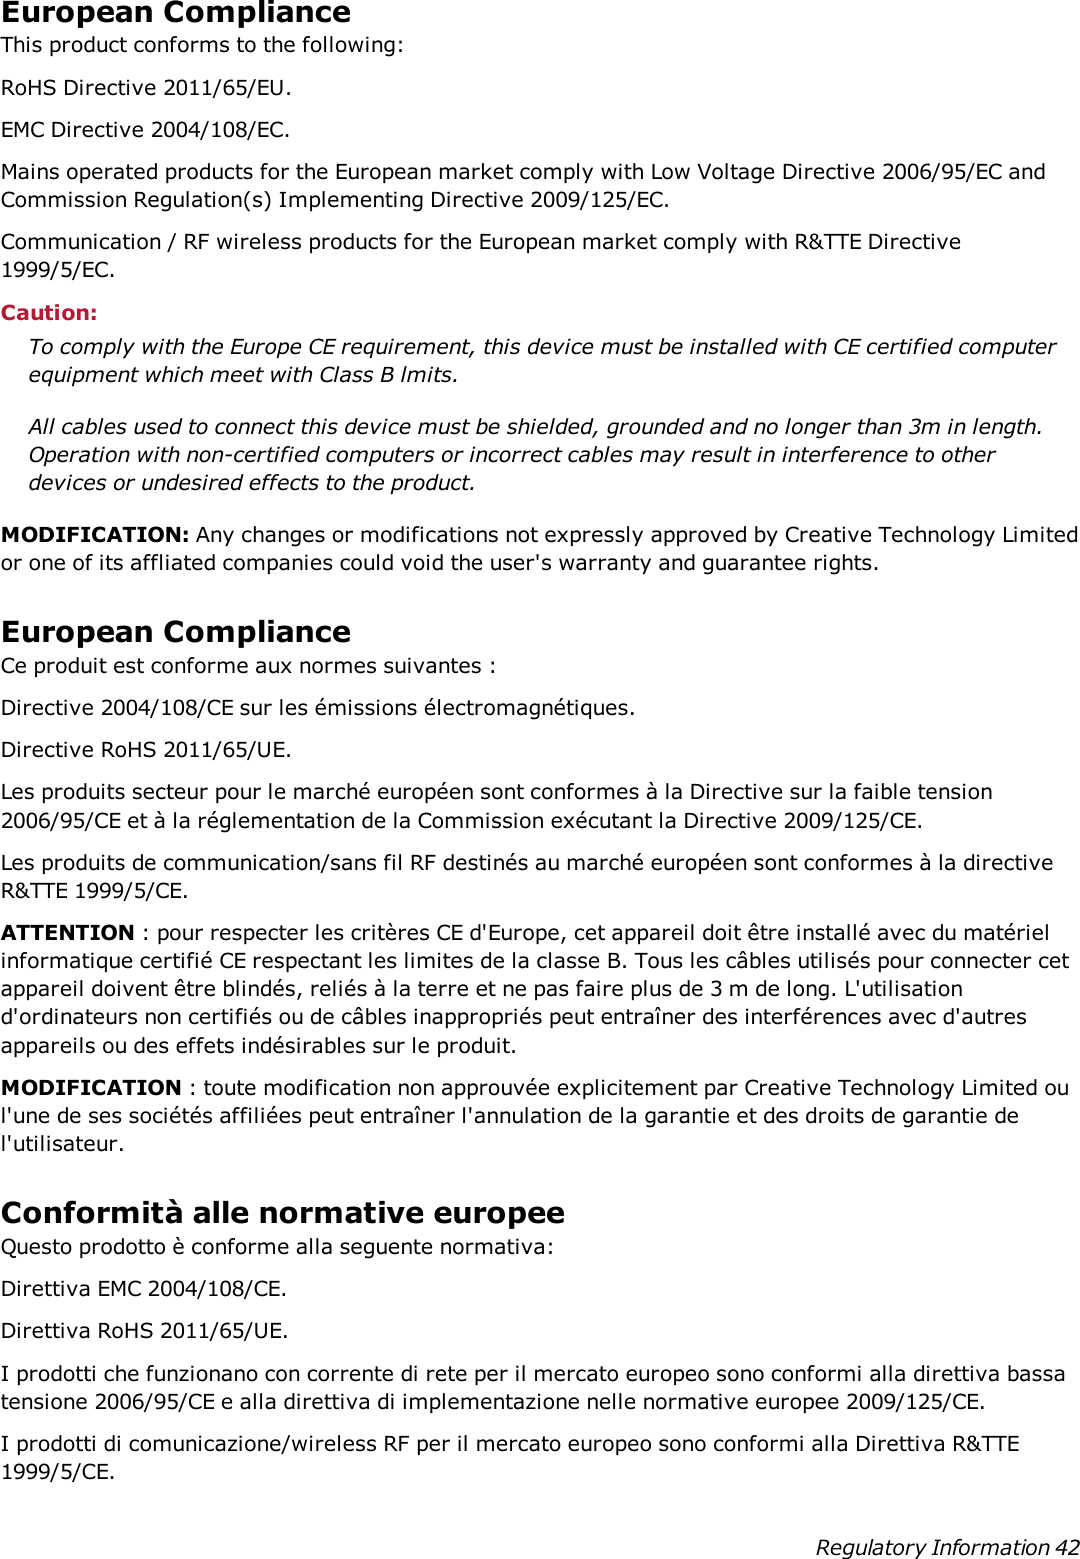 European ComplianceThis product conforms to the following:RoHS Directive 2011/65/EU.EMC Directive 2004/108/EC.Mains operated products for the European market comply with Low Voltage Directive 2006/95/EC andCommission Regulation(s) Implementing Directive 2009/125/EC.Communication / RF wireless products for the European market comply with R&amp;TTE Directive1999/5/EC.Caution:To comply with the Europe CE requirement, this device must be installed with CE certified computerequipment which meet with Class B lmits.All cables used to connect this device must be shielded, grounded and no longer than 3m in length.Operation with non-certified computers or incorrect cables may result in interference to otherdevices or undesired effects to the product.MODIFICATION: Any changes or modifications not expressly approved by Creative Technology Limitedor one of its affliated companies could void the user&apos;s warranty and guarantee rights.European ComplianceCe produit est conforme aux normes suivantes :Directive 2004/108/CE sur les émissions électromagnétiques.Directive RoHS 2011/65/UE.Les produits secteur pour le marché européen sont conformes à la Directive sur la faible tension2006/95/CE et à la réglementation de la Commission exécutant la Directive 2009/125/CE.Les produits de communication/sans fil RF destinés au marché européen sont conformes à la directiveR&amp;TTE 1999/5/CE.ATTENTION : pour respecter les critères CE d&apos;Europe, cet appareil doit être installé avec du matérielinformatique certifié CE respectant les limites de la classe B. Tous les câbles utilisés pour connecter cetappareil doivent être blindés, reliés à la terre et ne pas faire plus de 3 m de long. L&apos;utilisationd&apos;ordinateurs non certifiés ou de câbles inappropriés peut entraîner des interférences avec d&apos;autresappareils ou des effets indésirables sur le produit.MODIFICATION : toute modification non approuvée explicitement par Creative Technology Limited oul&apos;une de ses sociétés affiliées peut entraîner l&apos;annulation de la garantie et des droits de garantie del&apos;utilisateur.Conformità alle normative europeeQuesto prodotto è conforme alla seguente normativa:Direttiva EMC 2004/108/CE.Direttiva RoHS 2011/65/UE.I prodotti che funzionano con corrente di rete per il mercato europeo sono conformi alla direttiva bassatensione 2006/95/CE e alla direttiva di implementazione nelle normative europee 2009/125/CE.I prodotti di comunicazione/wireless RF per il mercato europeo sono conformi alla Direttiva R&amp;TTE1999/5/CE.Regulatory Information 42